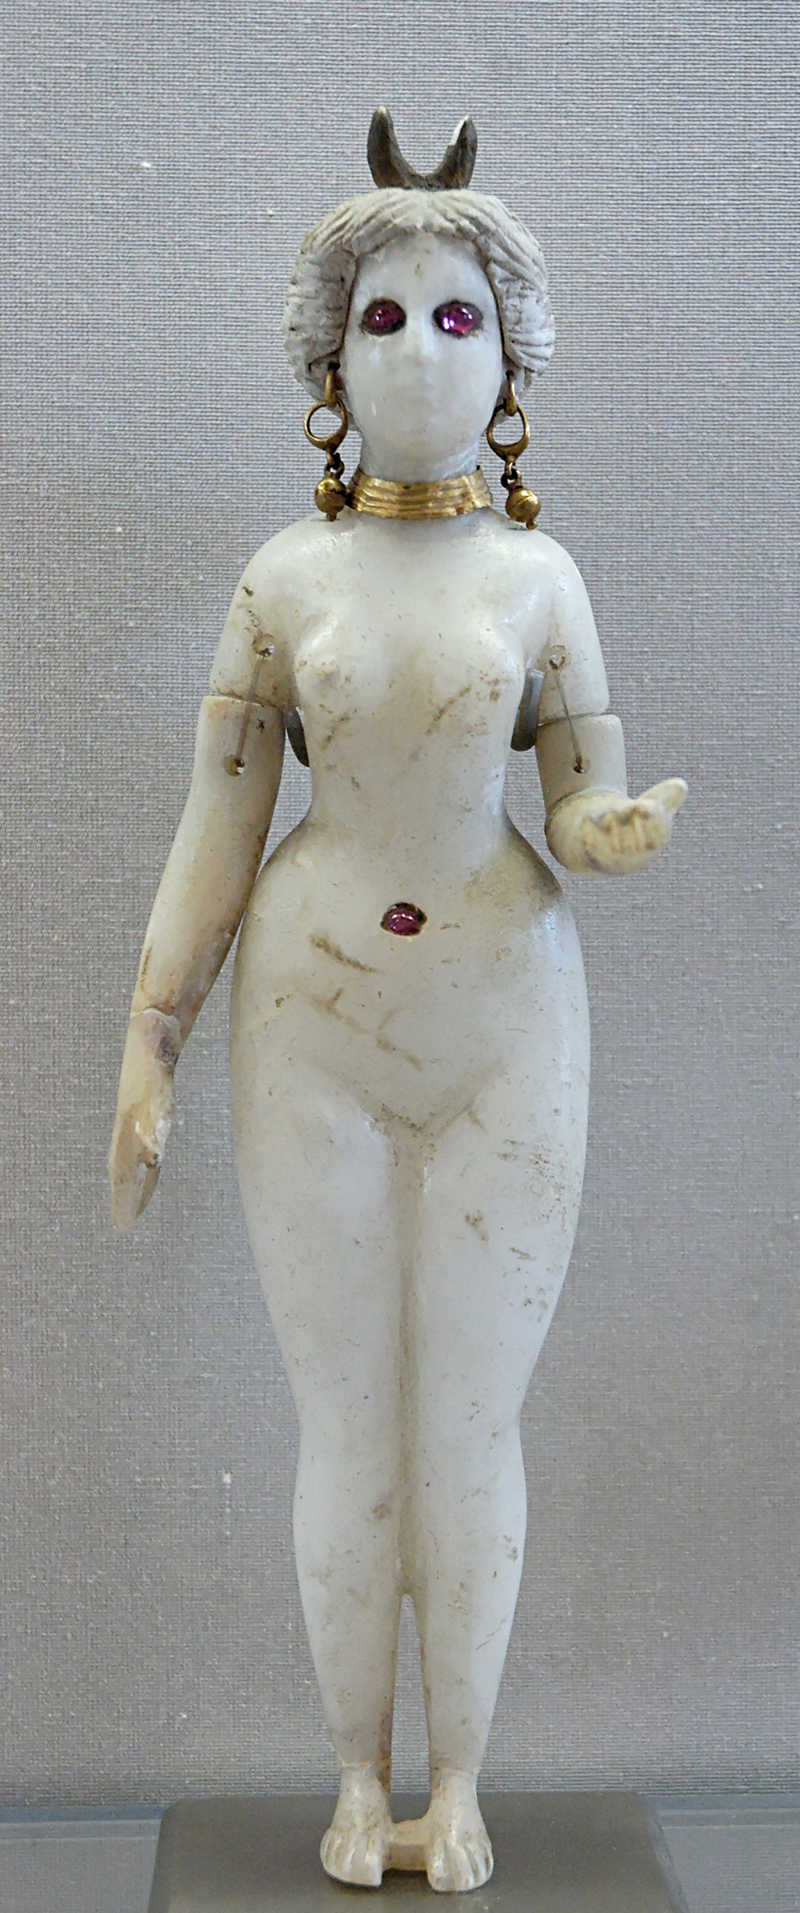 Богиня Астарта (Иштар, Инанна) из некрополя Хилла, недалеко от Вавилона, II век до н.э.